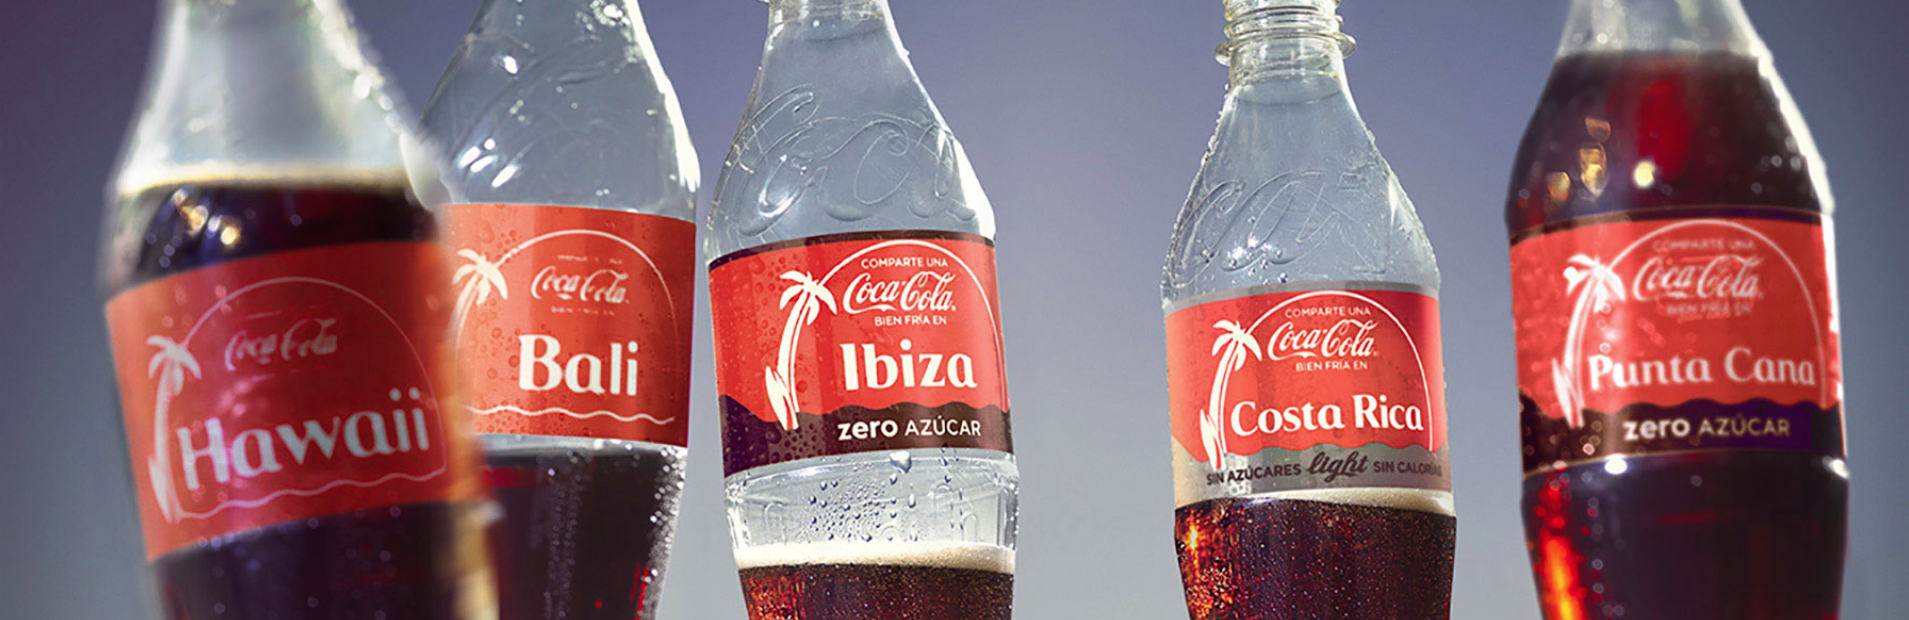 Coca-Cola personaliza este verano sus envases con destinos y viajes